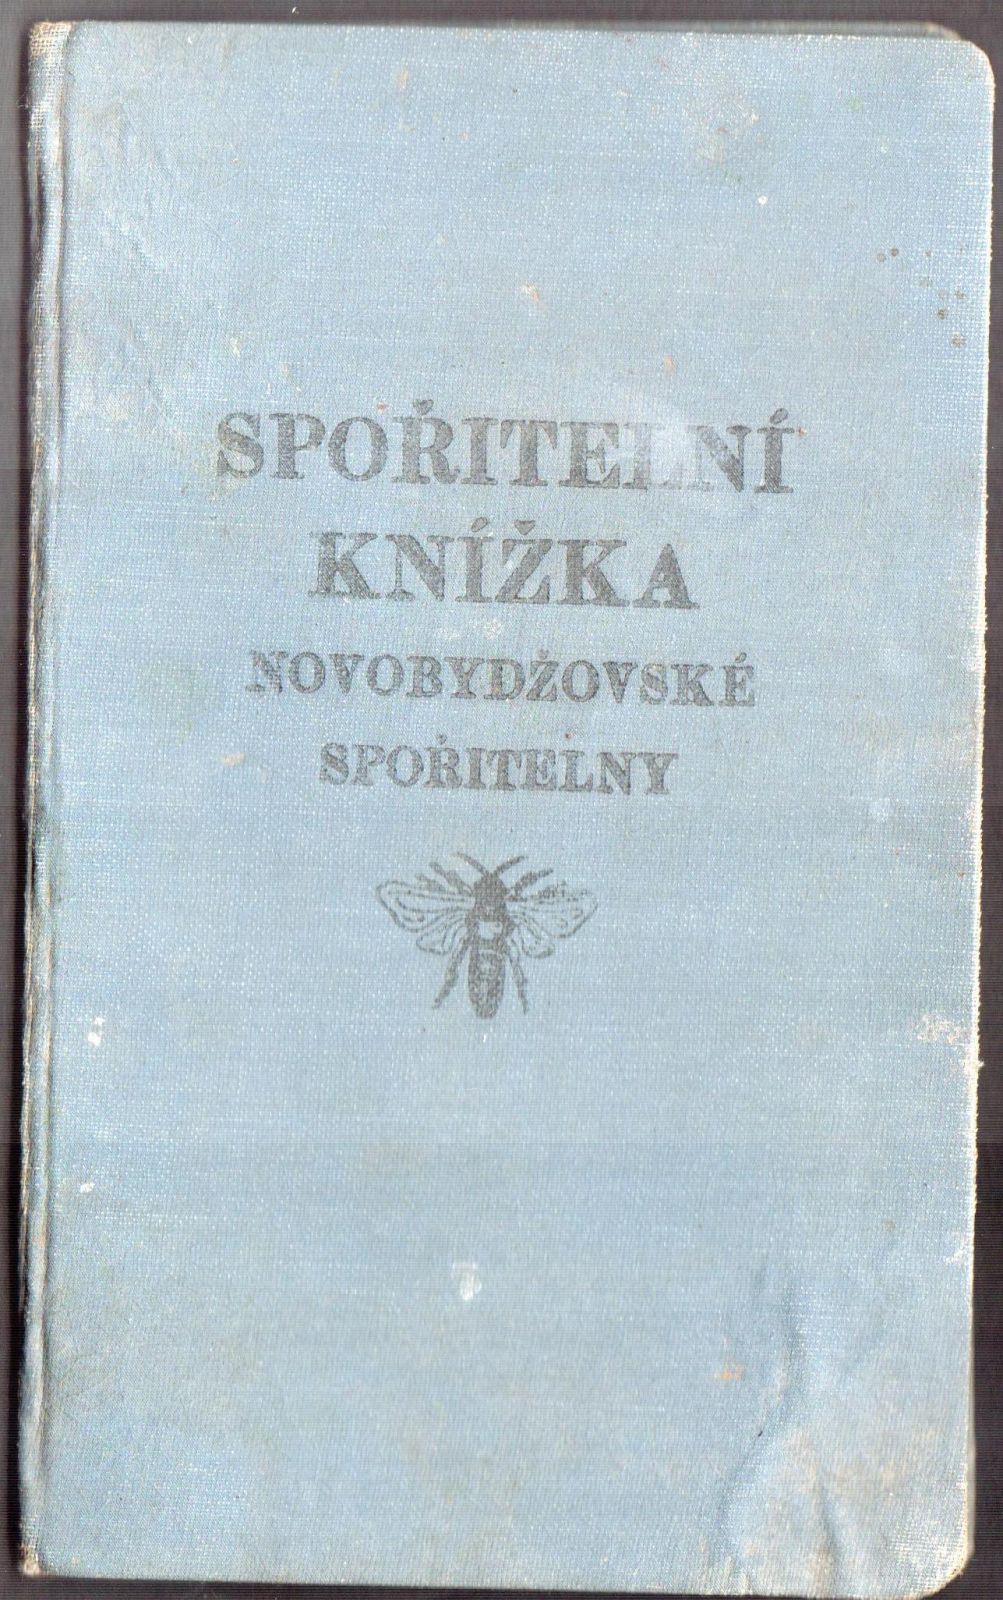 Spořitelní knížka Novobydžovské spořitelny (1923)